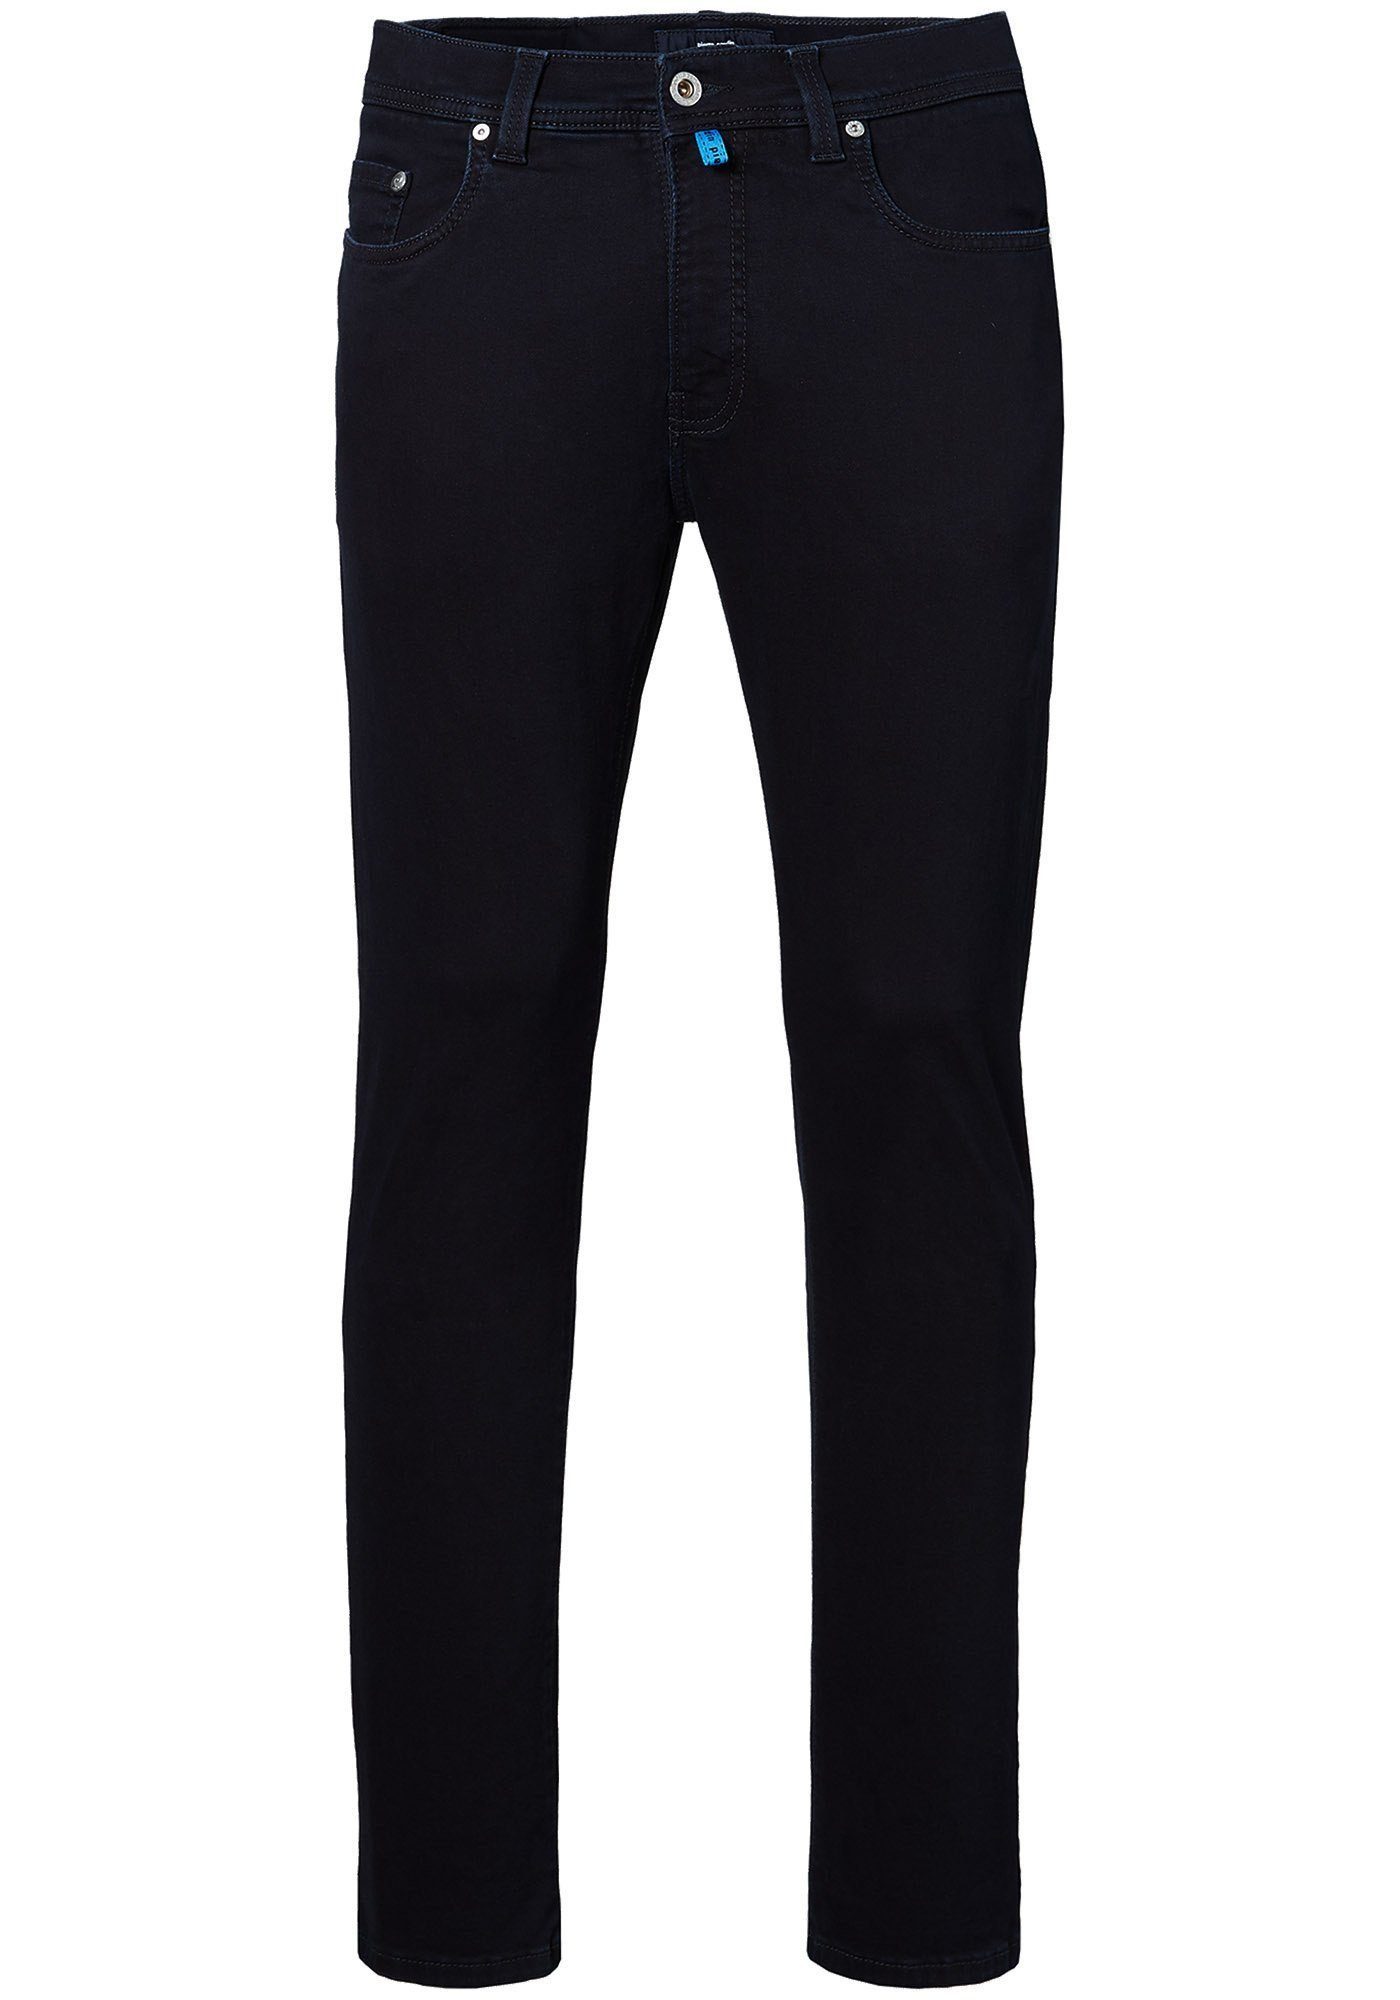 Lyon und bequem Used 5-Pocket-Jeans Futureflex Pierre Tapered Blue/Black Denim, Cardin elastisch